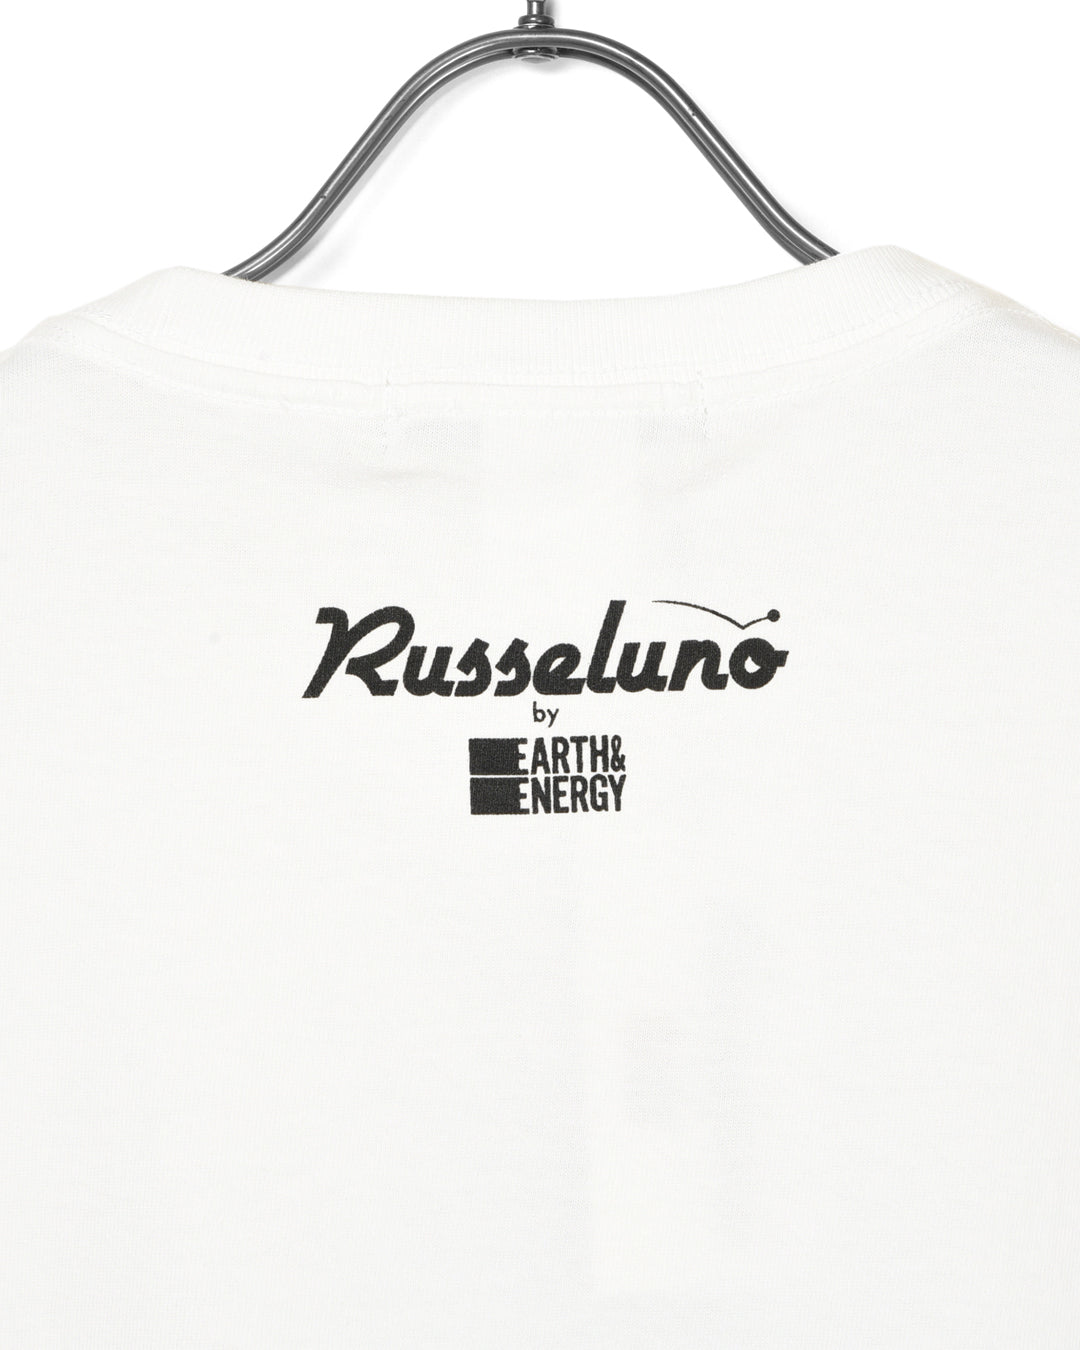 Camiseta Russeluno por E & E & E-Ki Nishimoto